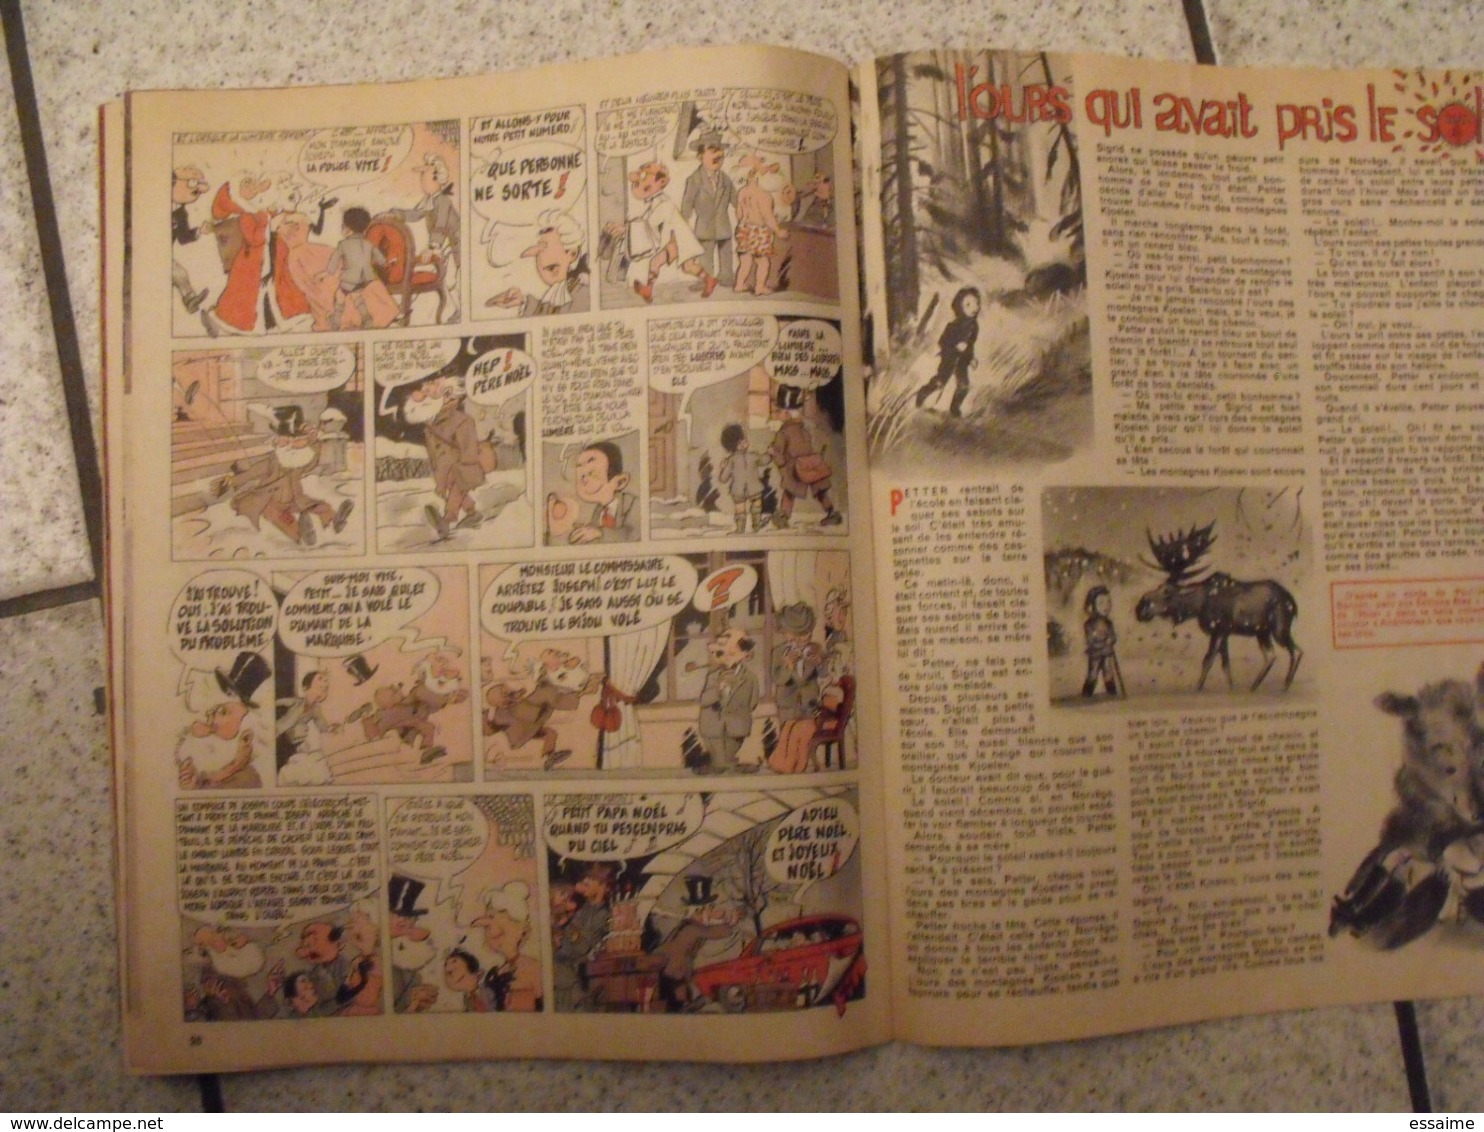 Amis-coop N° 40 De Décembre 1961. Journal BD à Redécouvrir. 36 Pages. - Other Magazines